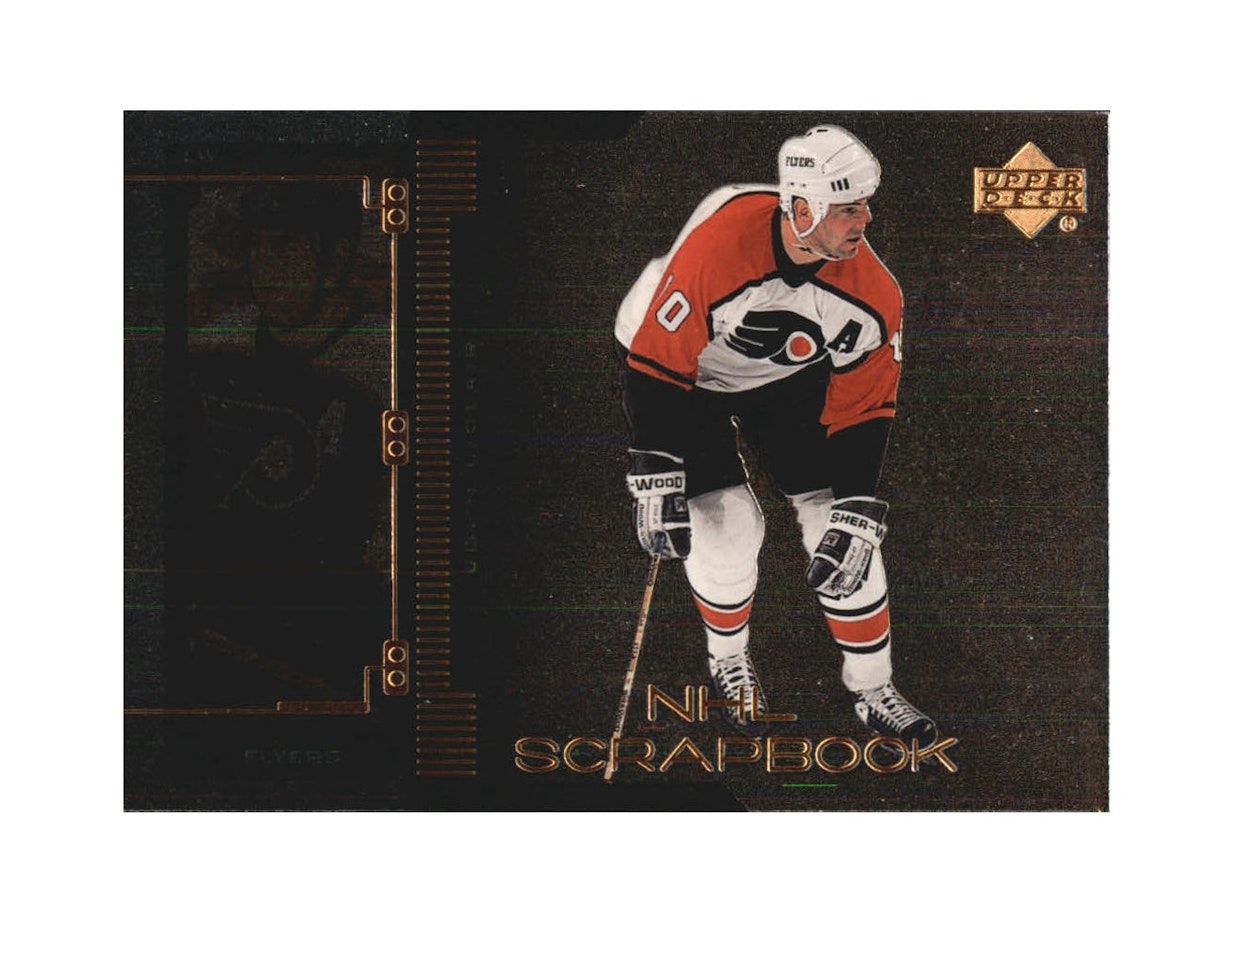 1999-00 Upper Deck NHL Scrapbook #SB13 John LeClair (10-X175-FLYERS)